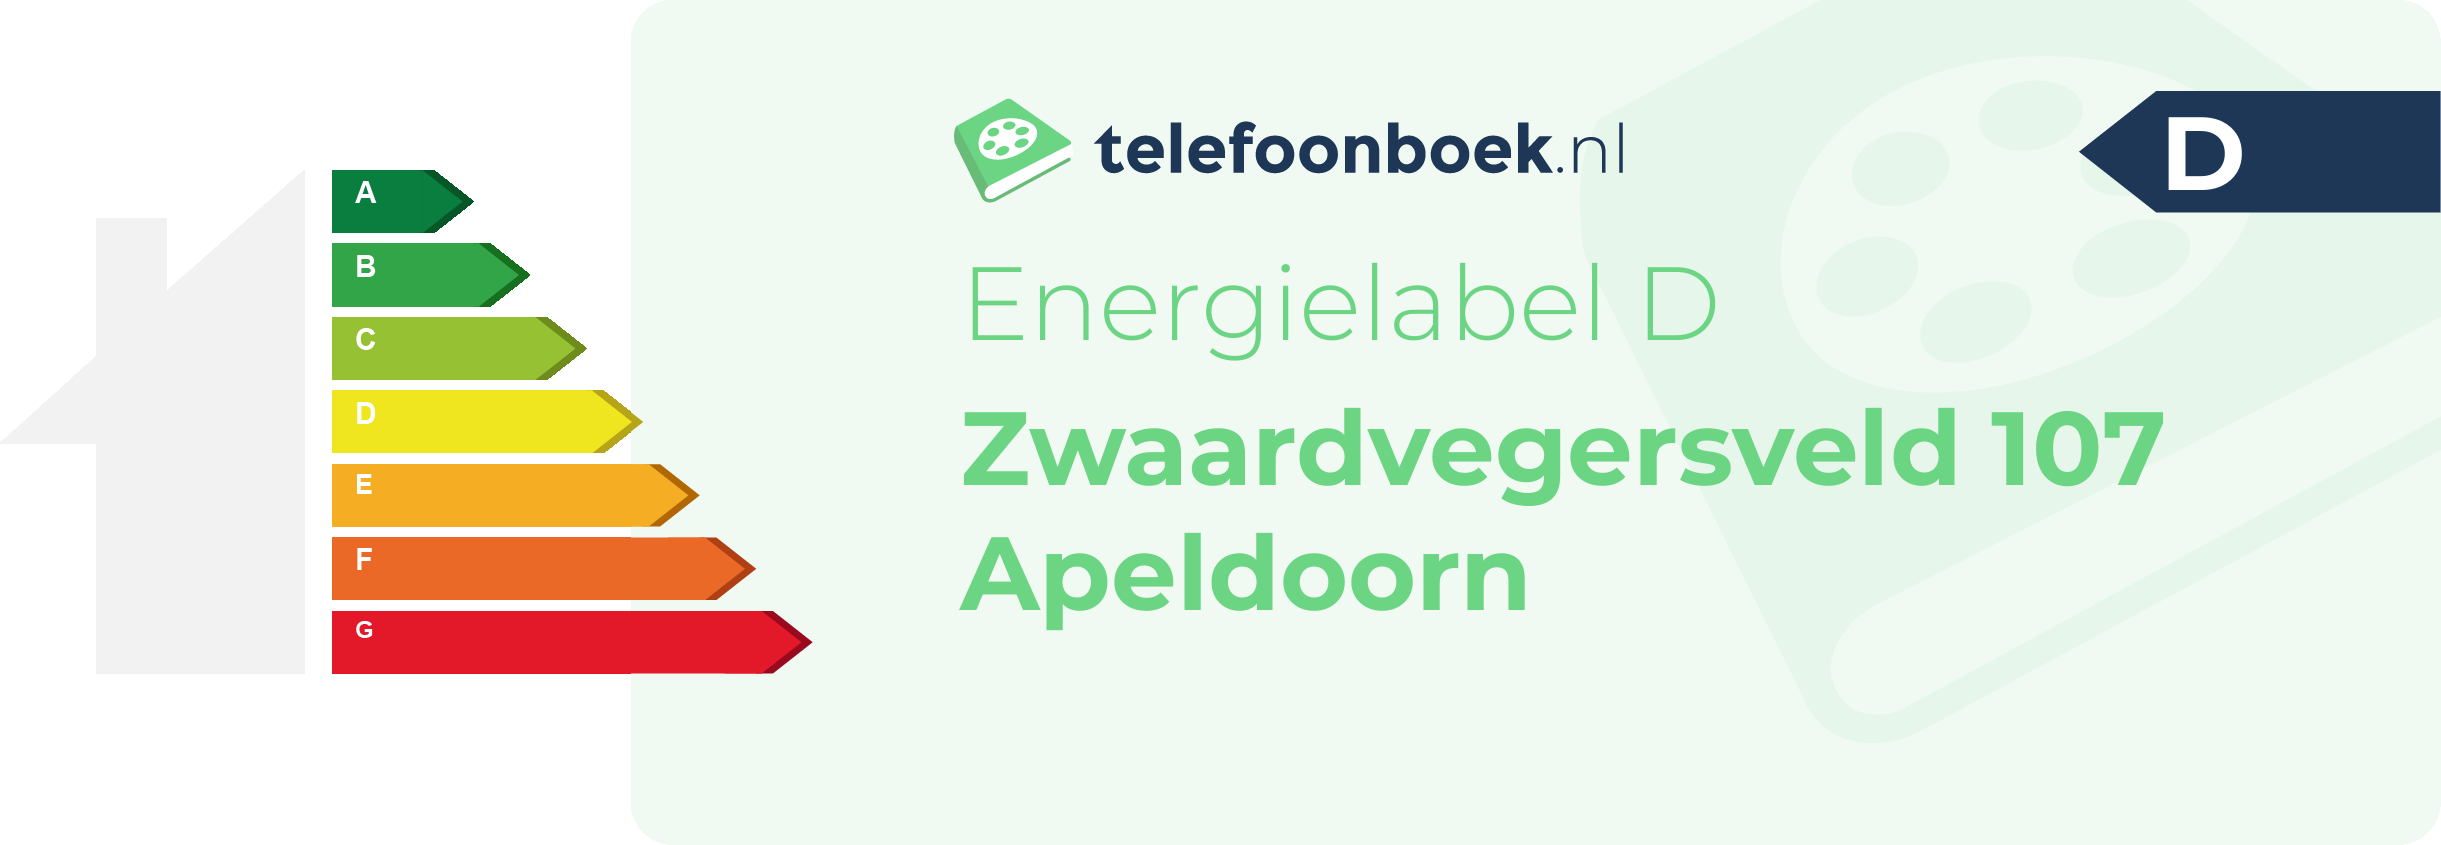 Energielabel Zwaardvegersveld 107 Apeldoorn